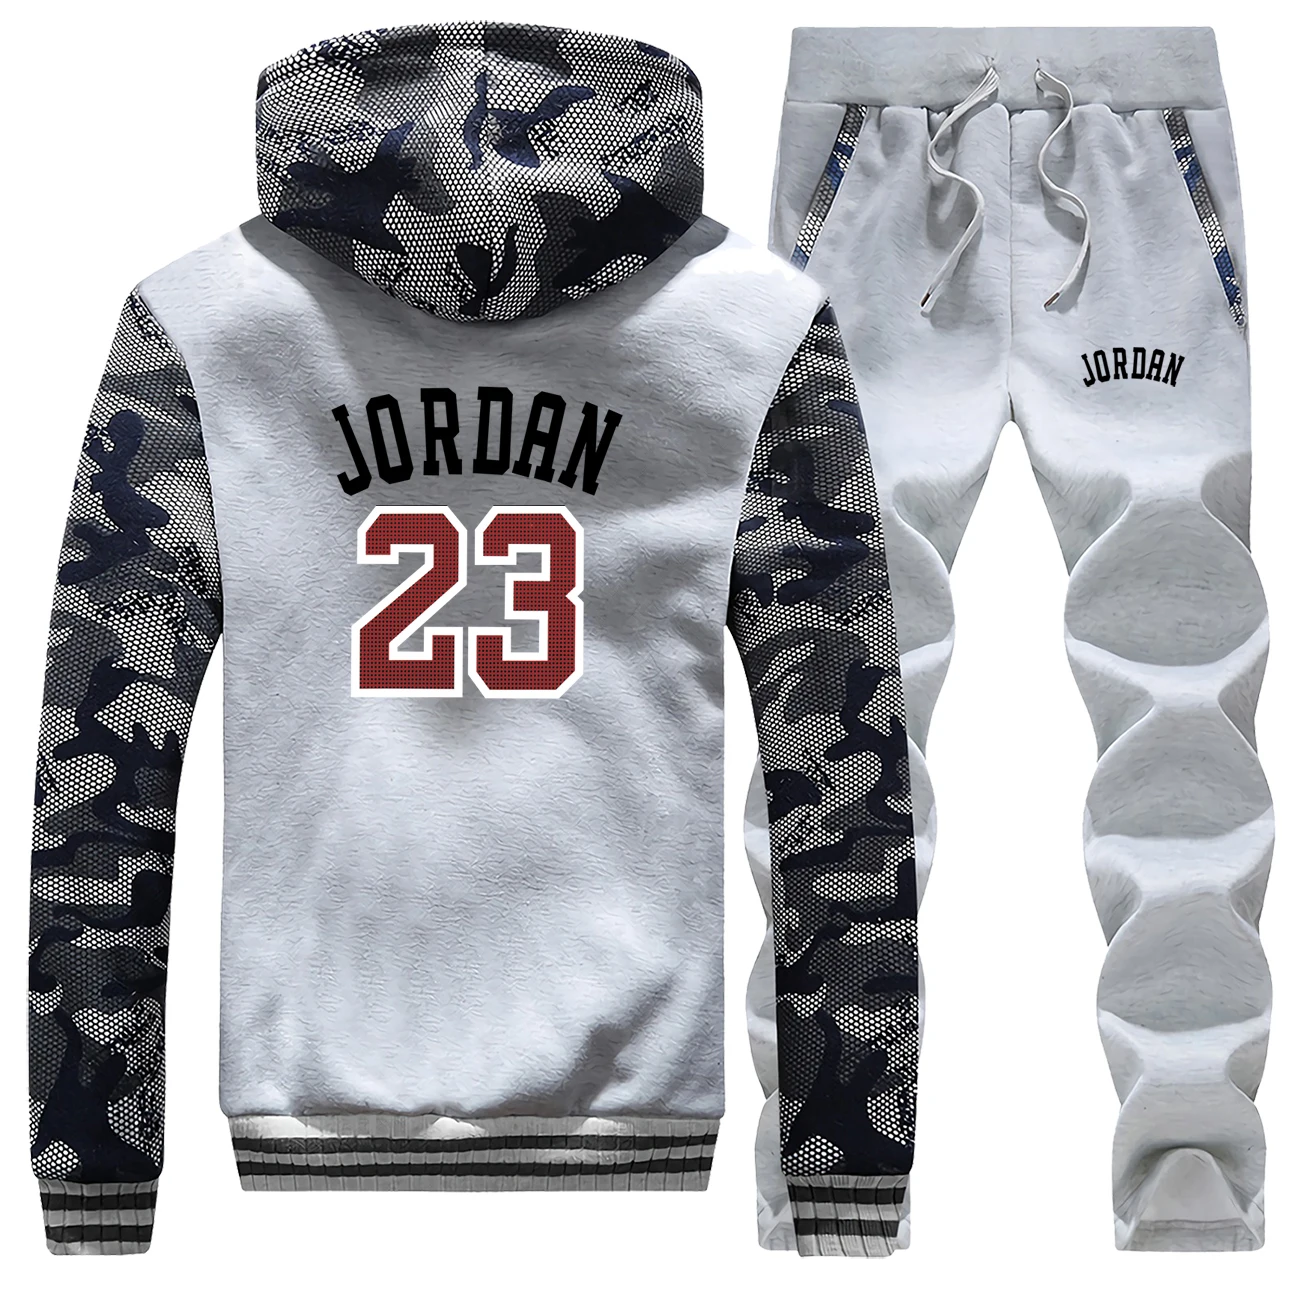 Jordan 23, мужской спортивный костюм, хит, спортивная одежда, мужской спортивный костюм, мужской костюм, мужские теплые штаны, брендовая толстовка+ брюки, мужской костюм